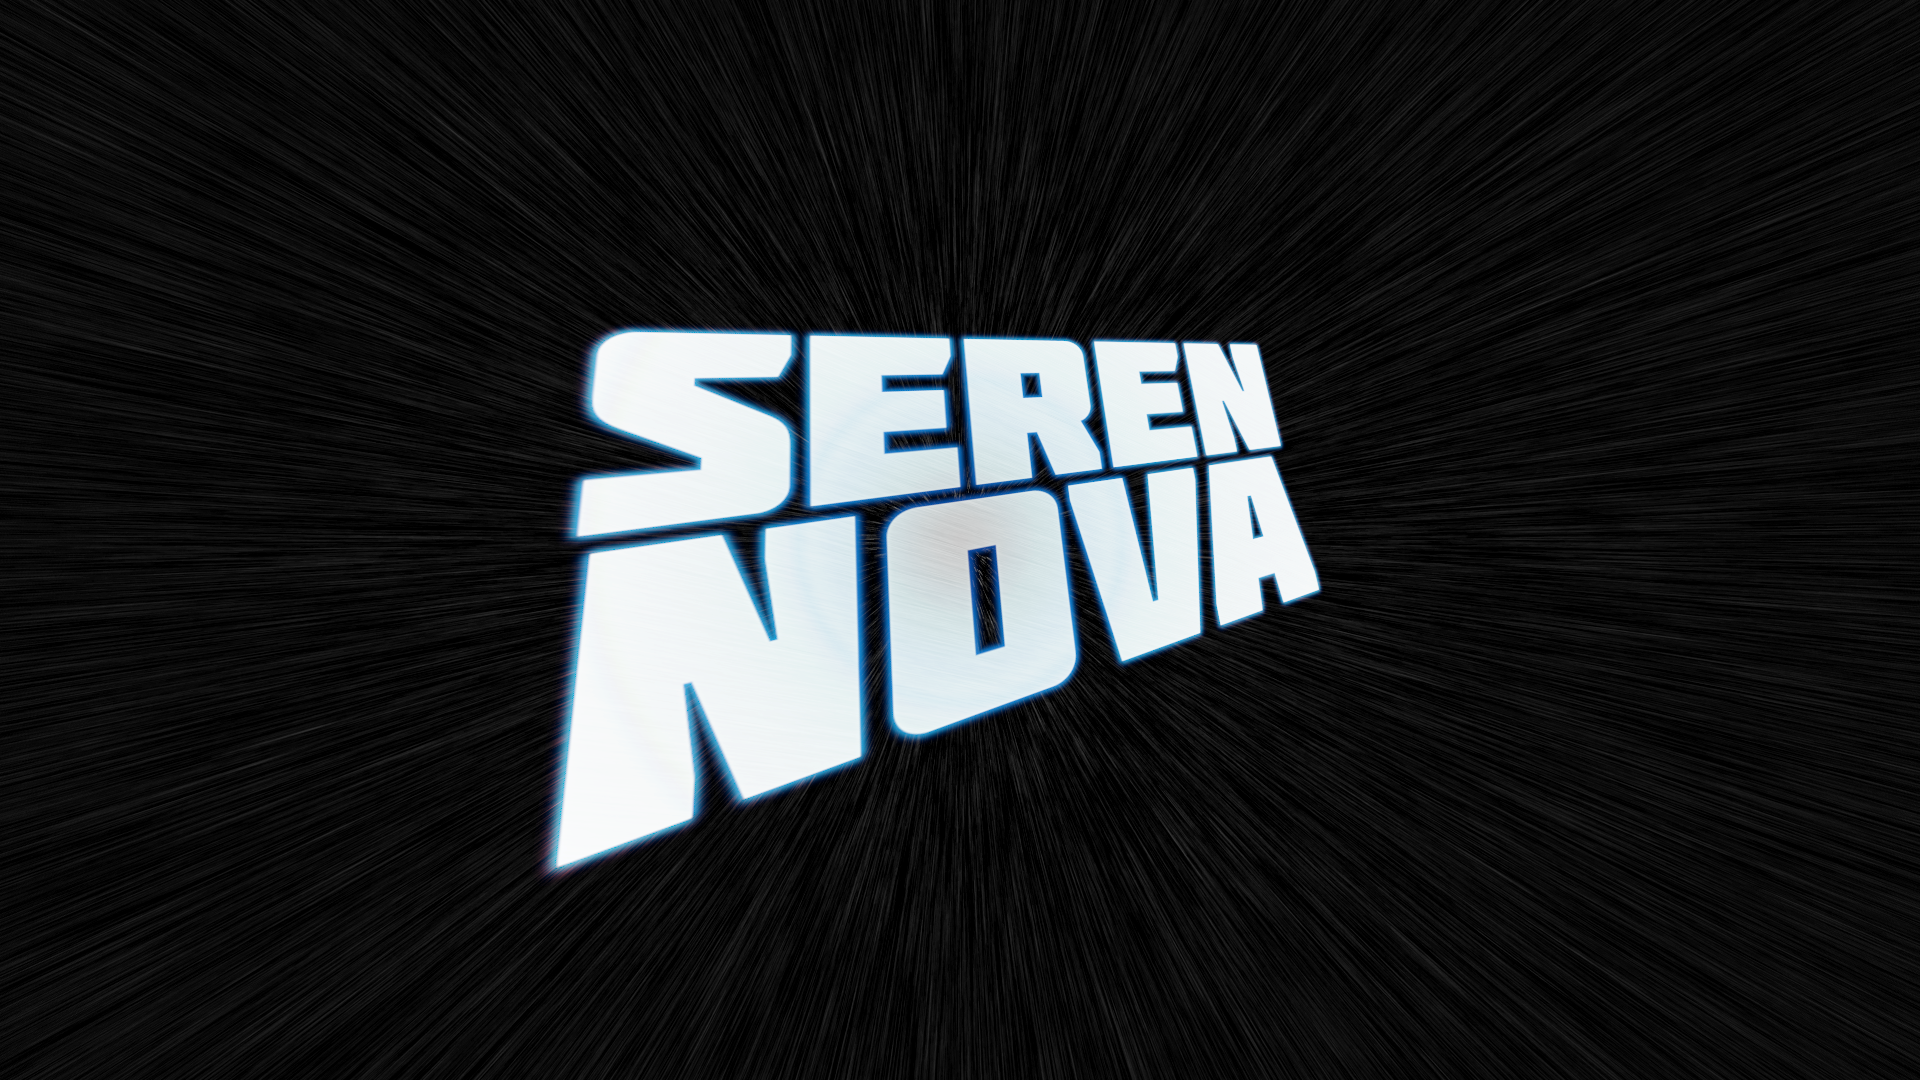 Seren Nova indie 3d sci-fi game